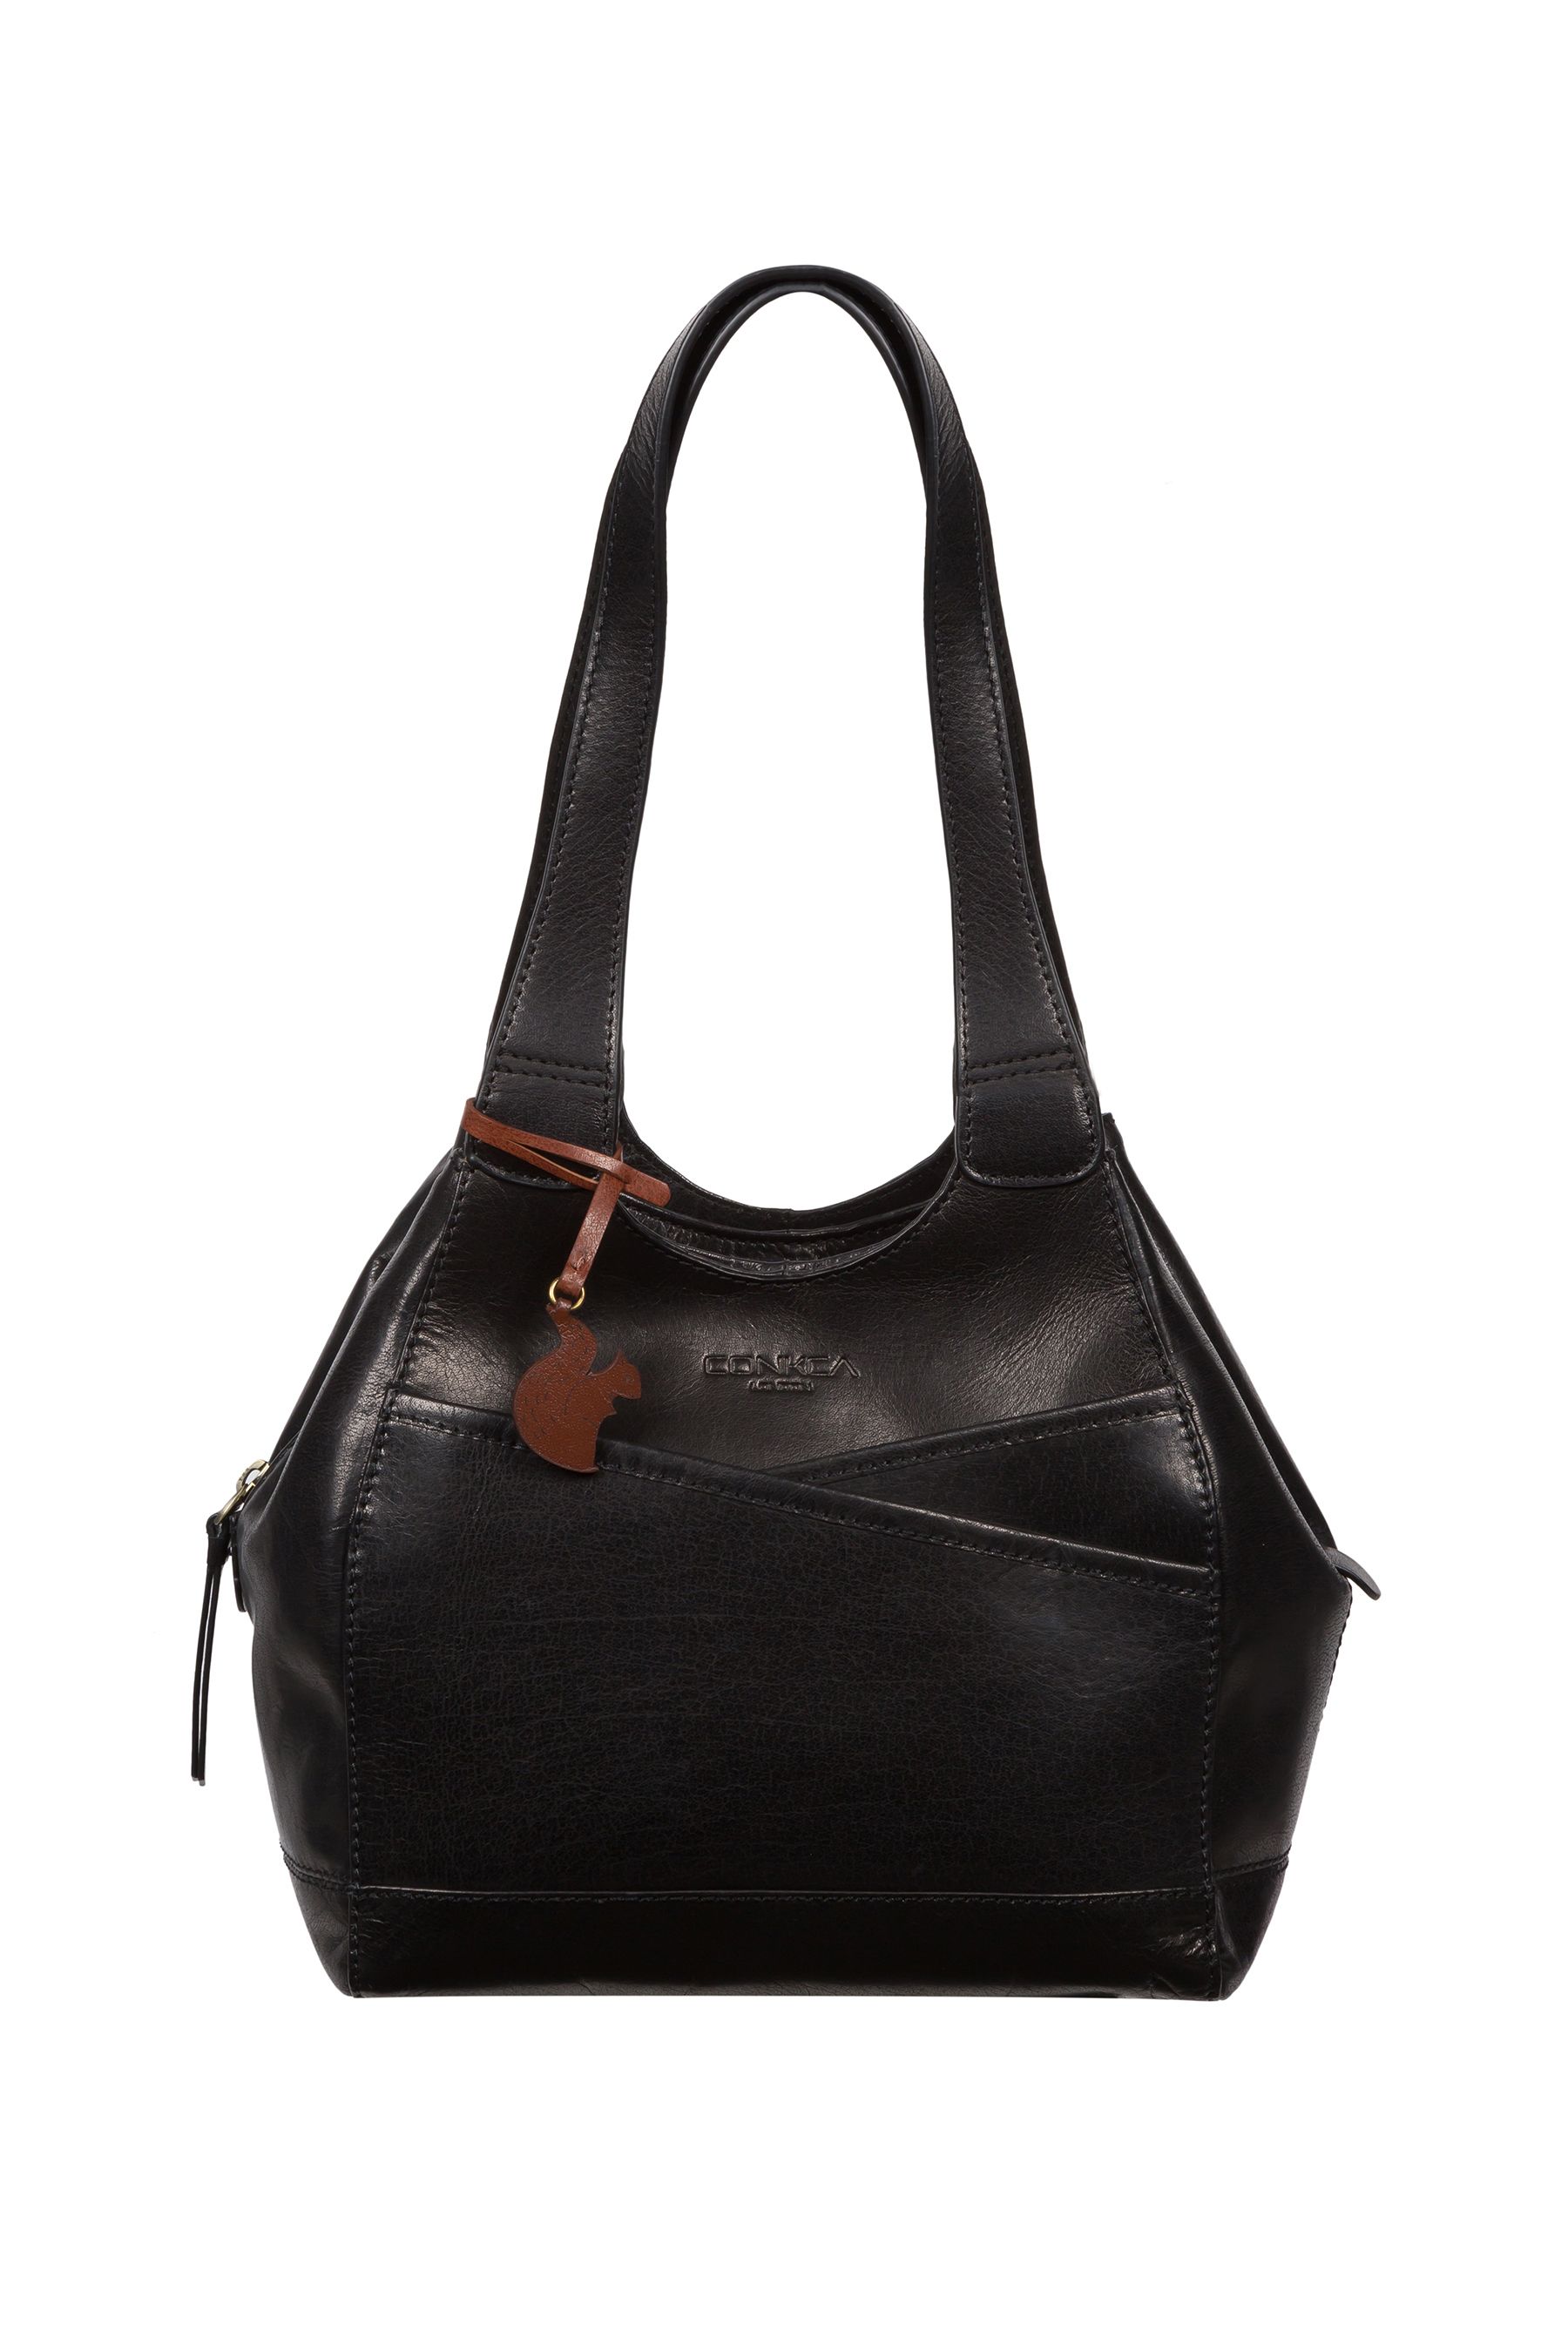 Buy Conkca Juliet Handbag from the Next UK online shop